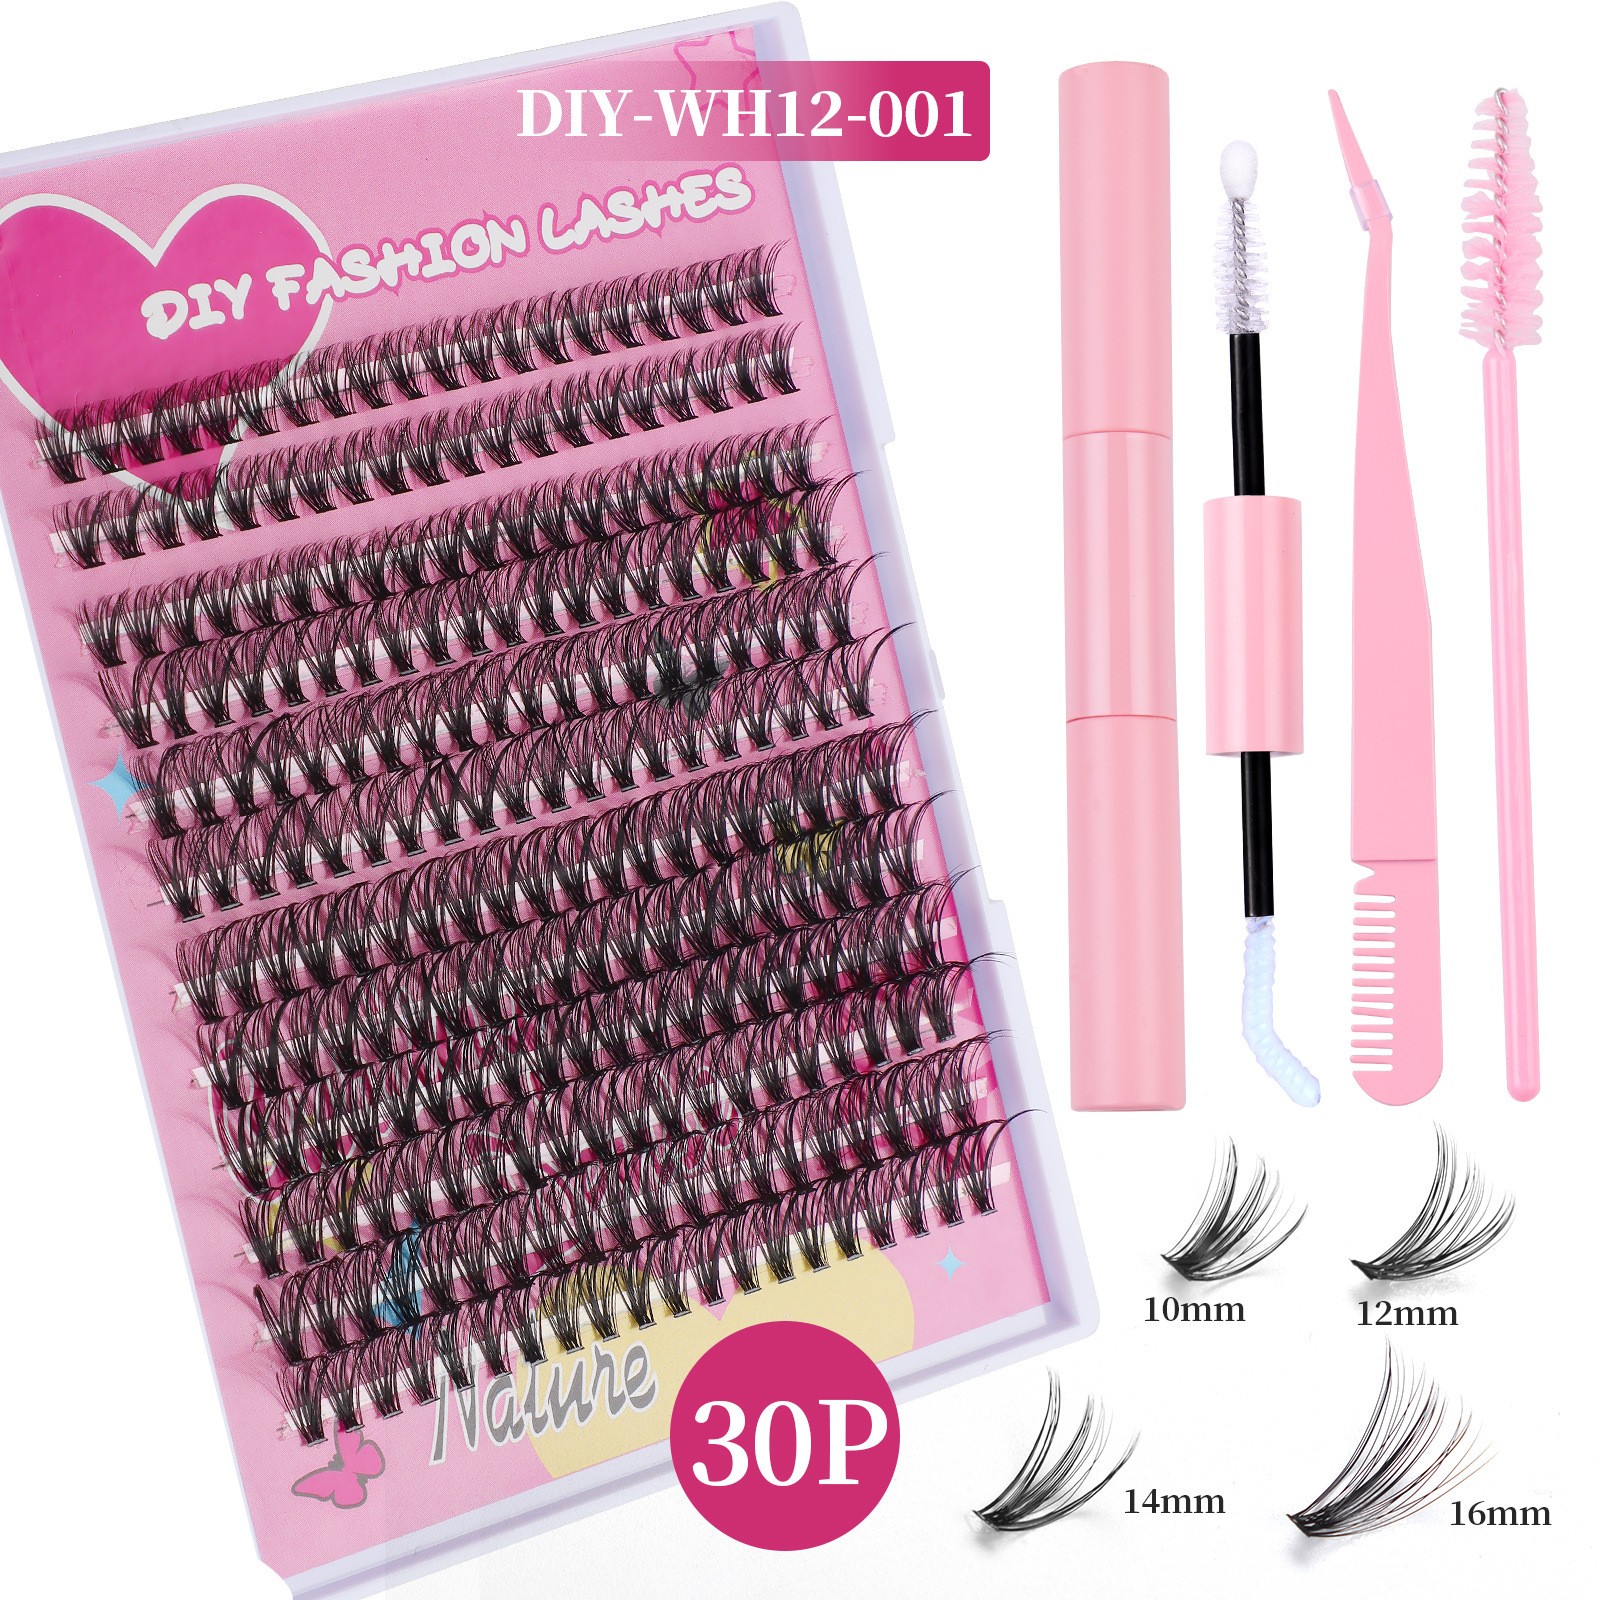 DIY-WH12-001  Pink set